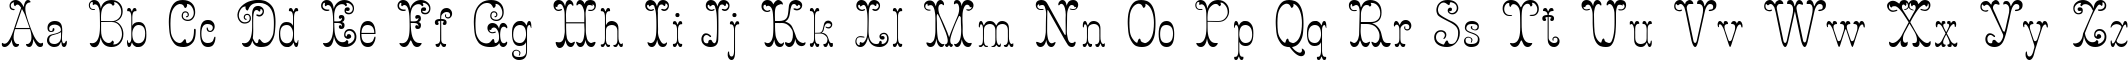 Пример написания английского алфавита шрифтом Figurny